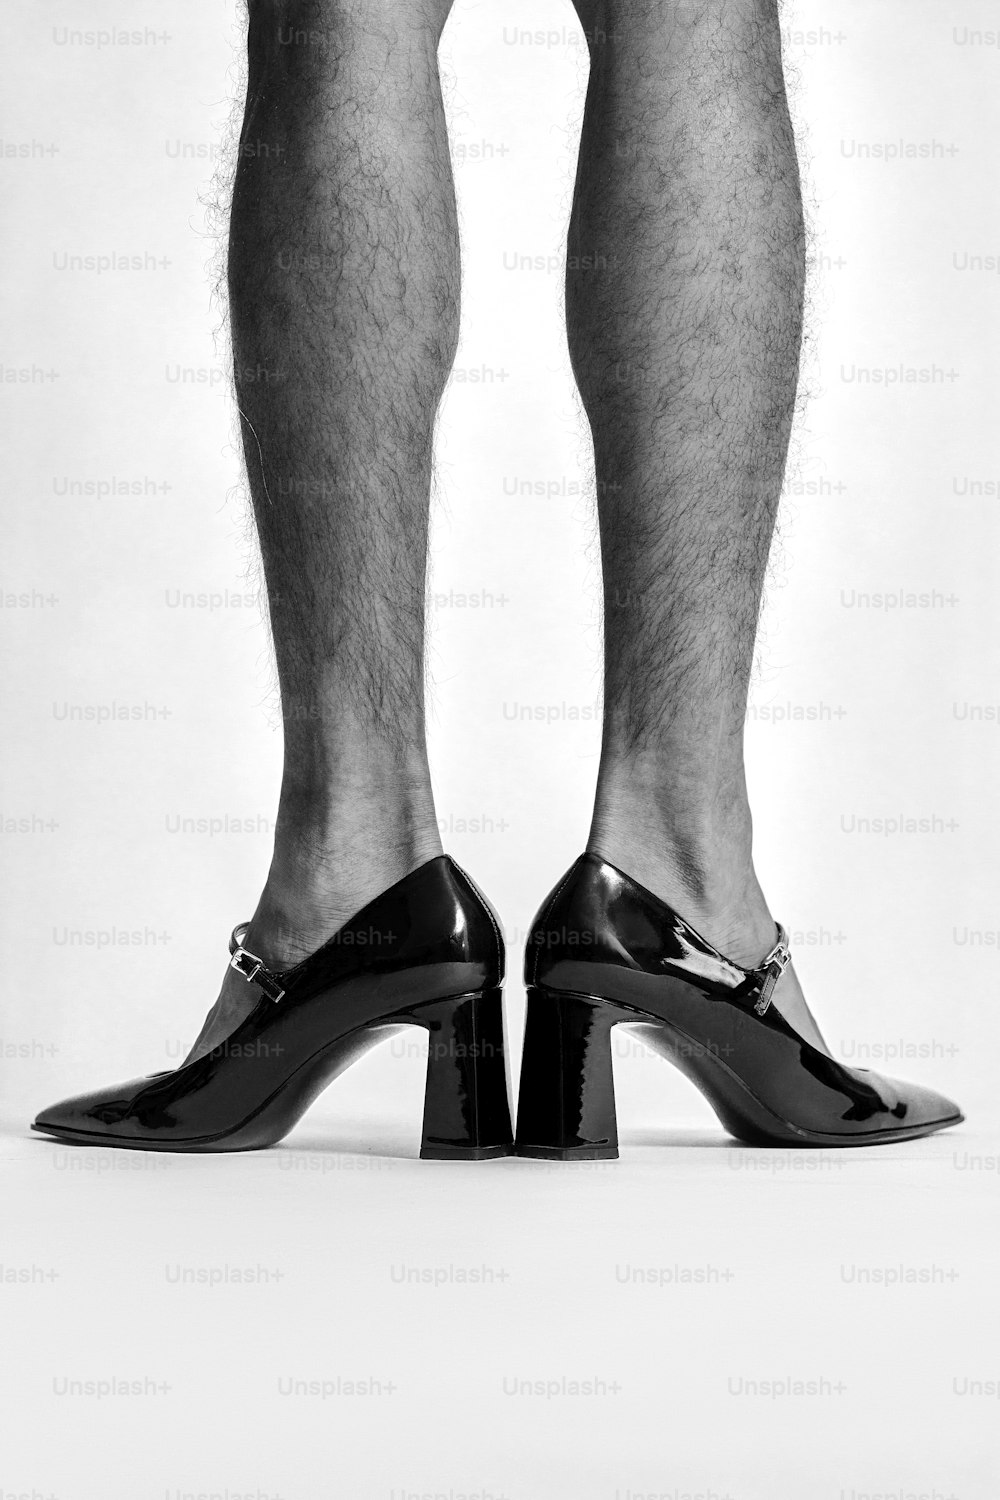 하이힐을 신은 남자의 다리를 찍은 흑백 사진